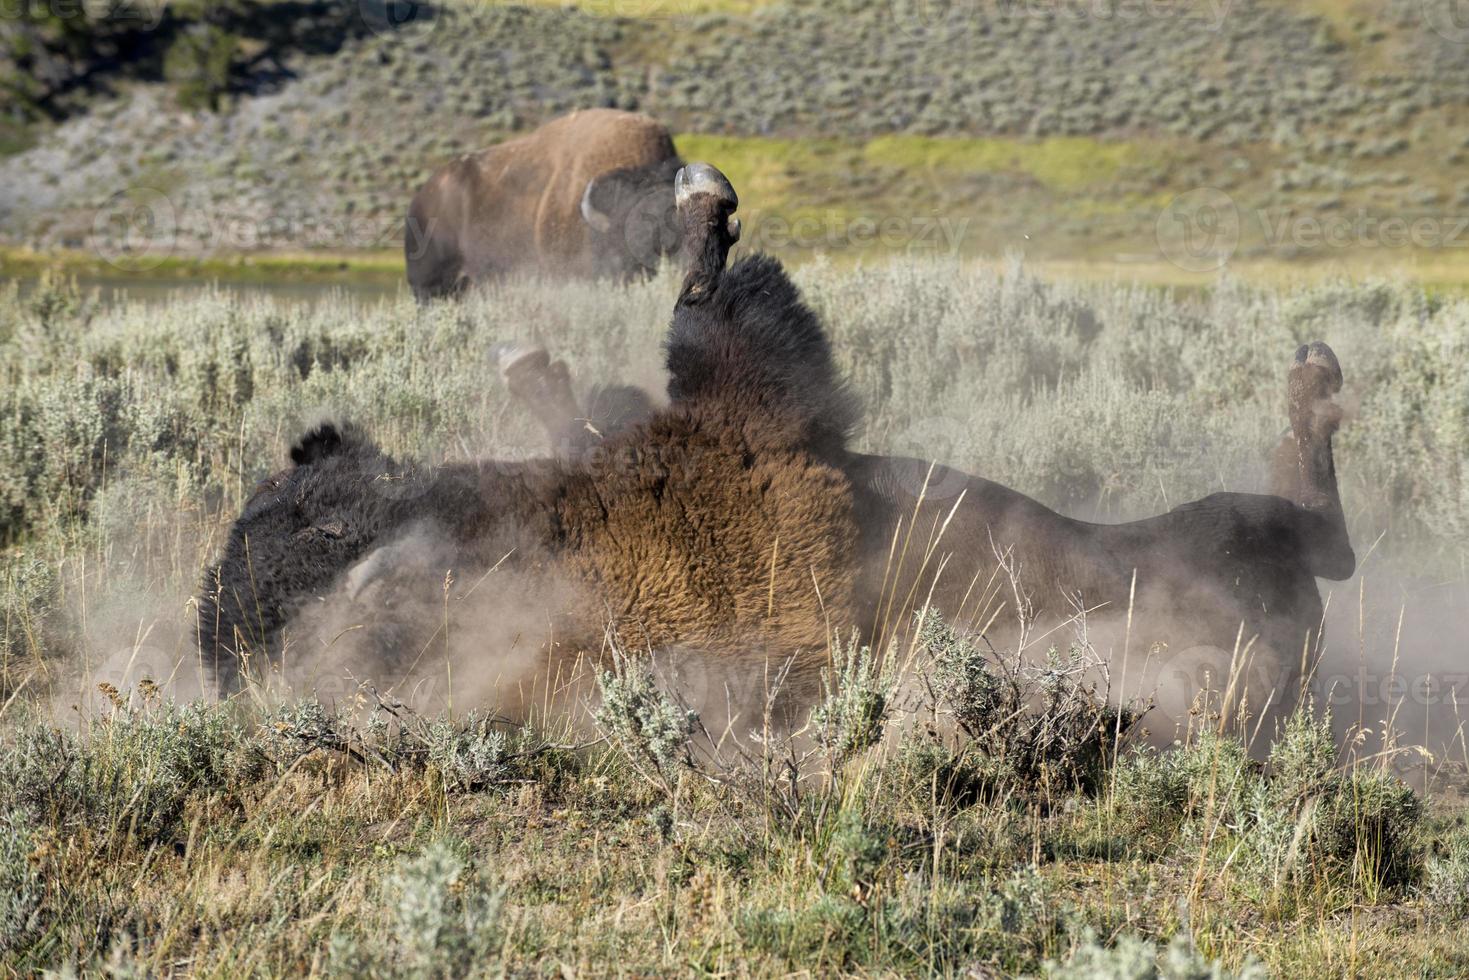 bisonte búfalo en yellowstone foto